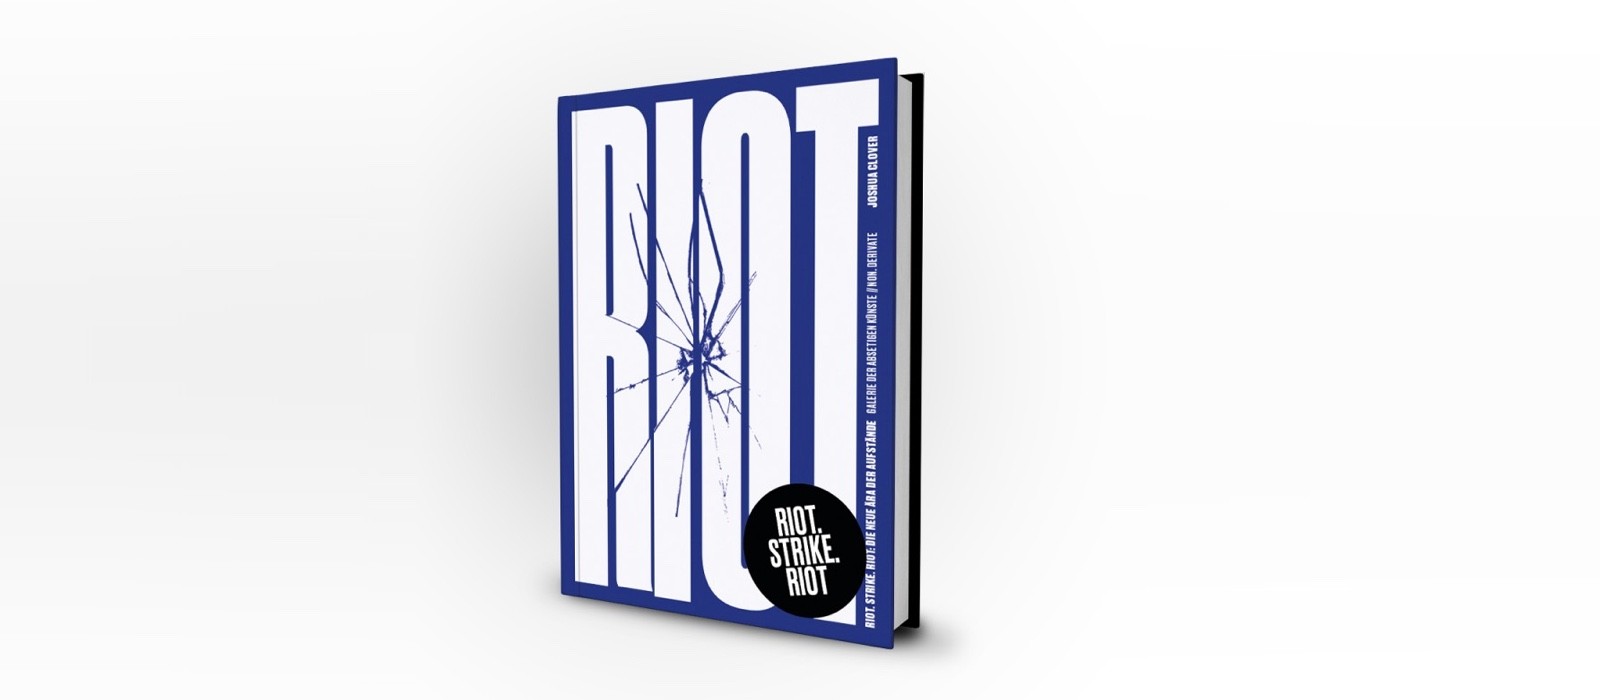 Unsere neue Publikation: »Riot. Strike. Riot« von J. Clover